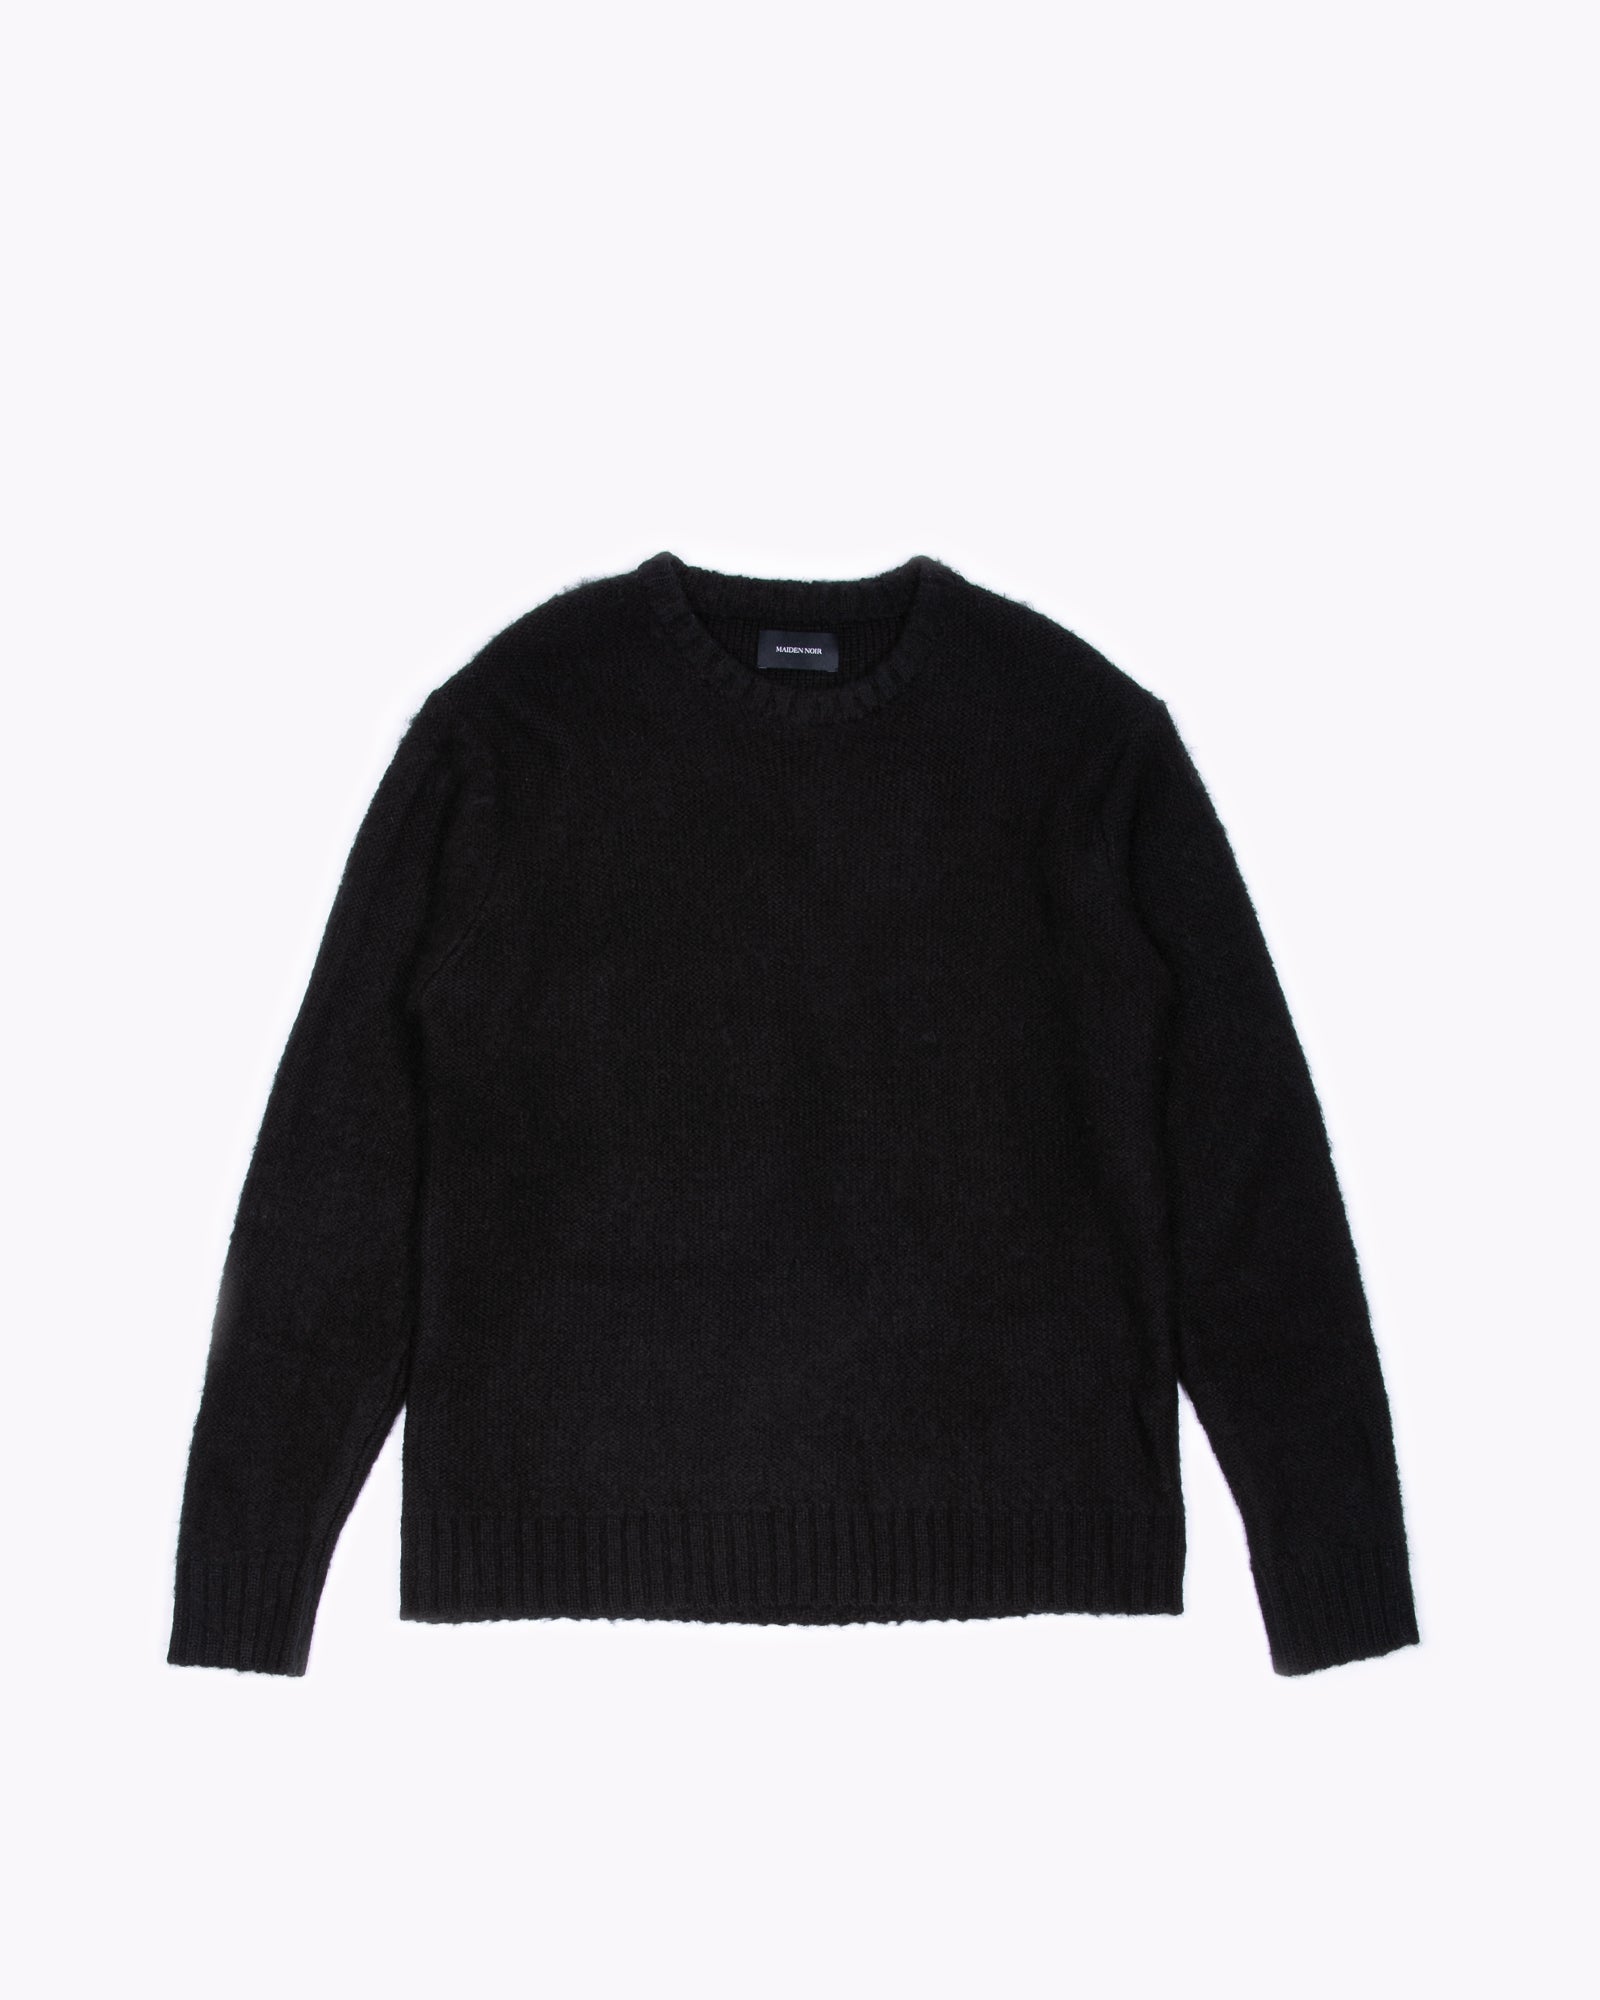 Women's Black Mohair Short Sleeve Sweater, Black Dress Shirt